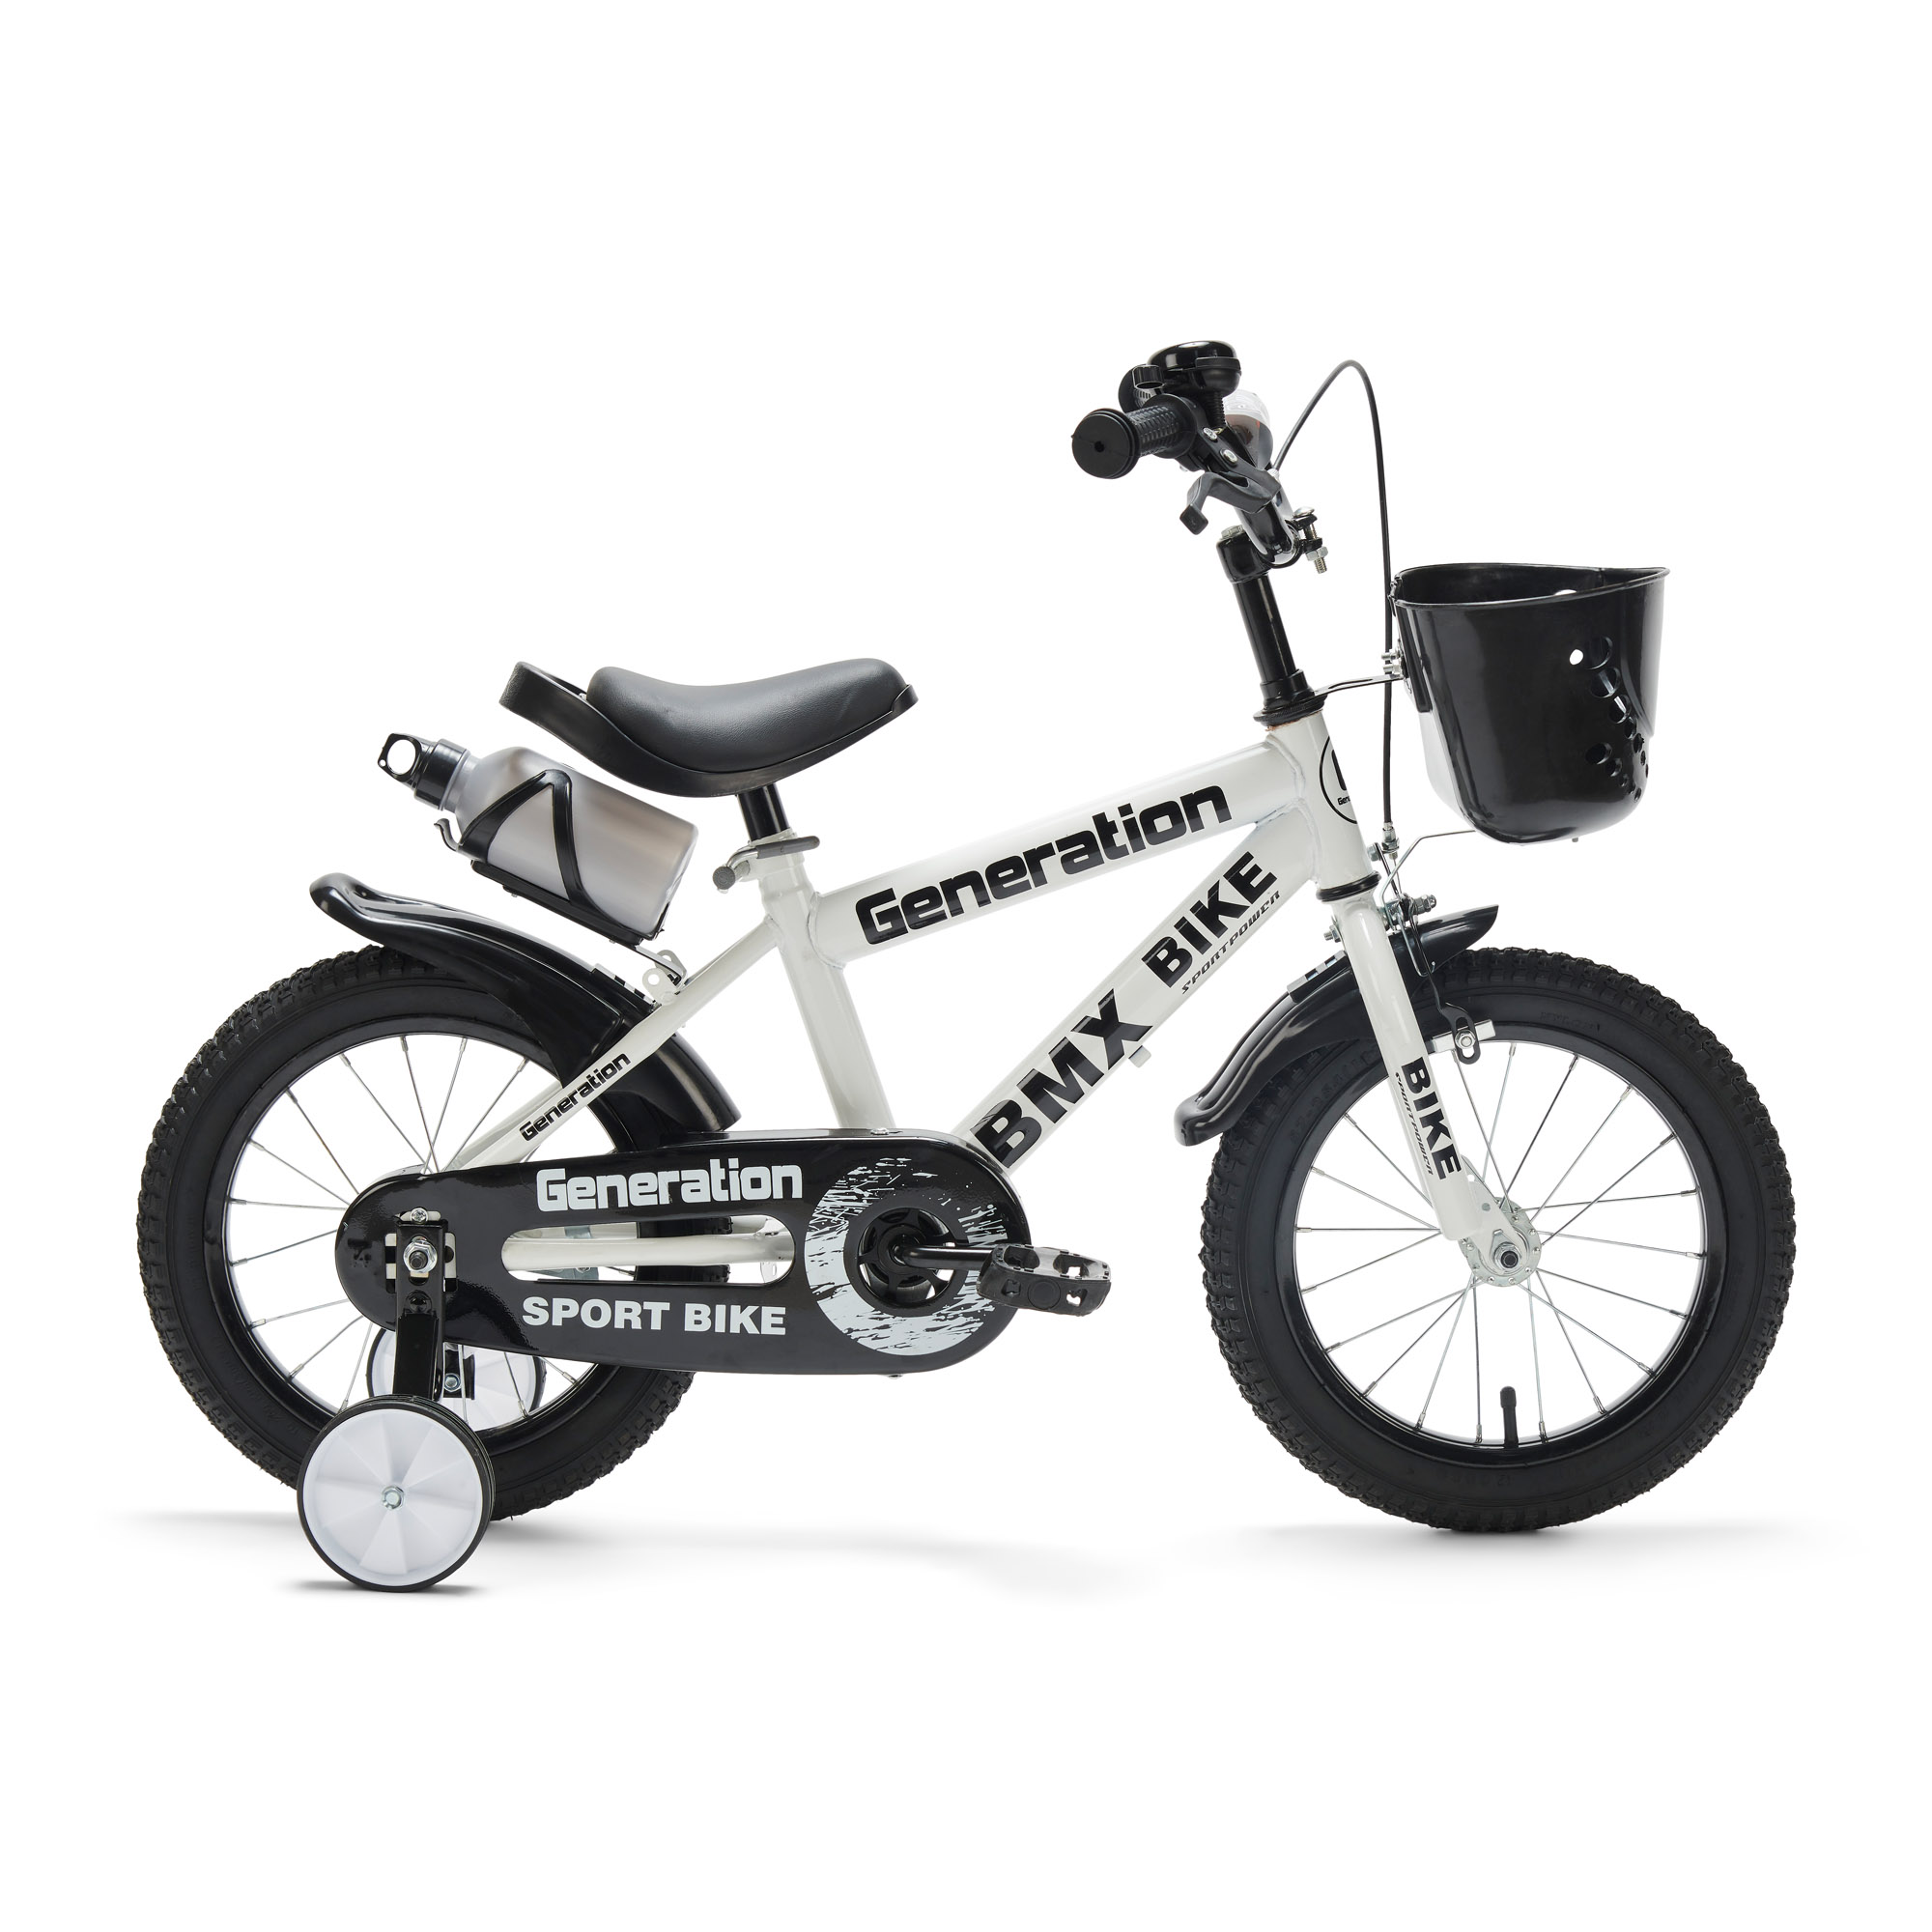 toezicht houden op dronken Monteur Generation BMX fiets 16 inch - Wit - Goedkope Fietsjes